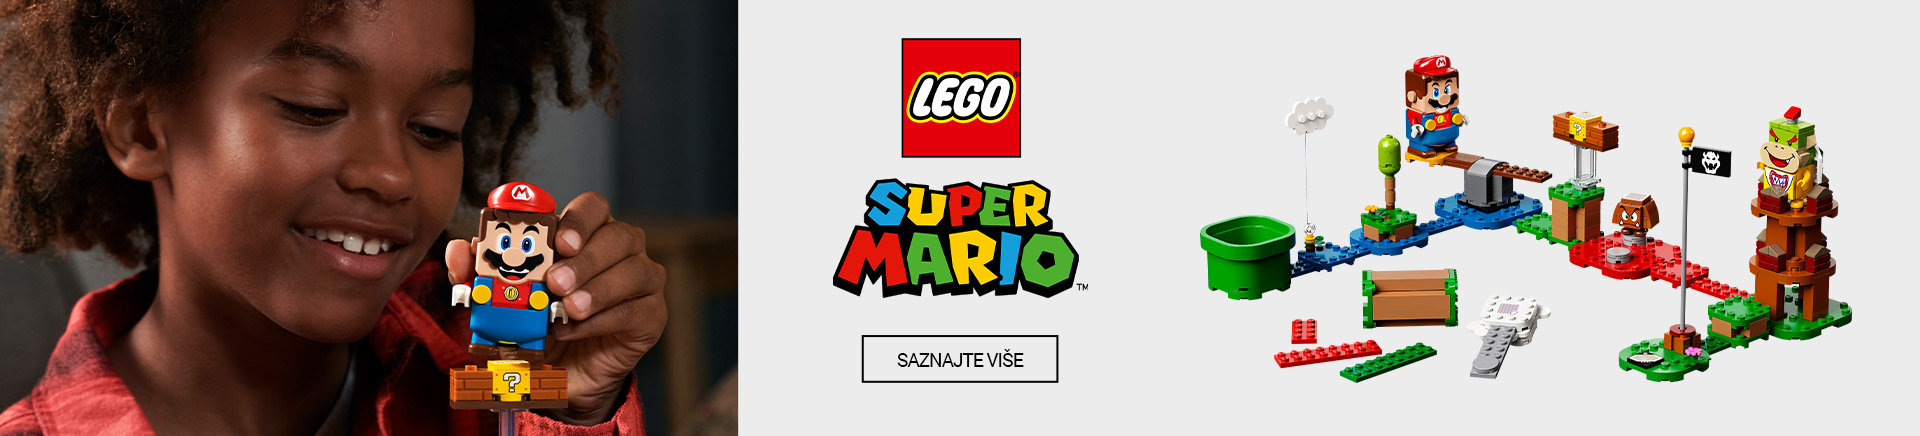 HR~Lego Super Mario MOBILE 380 X 436.jpg